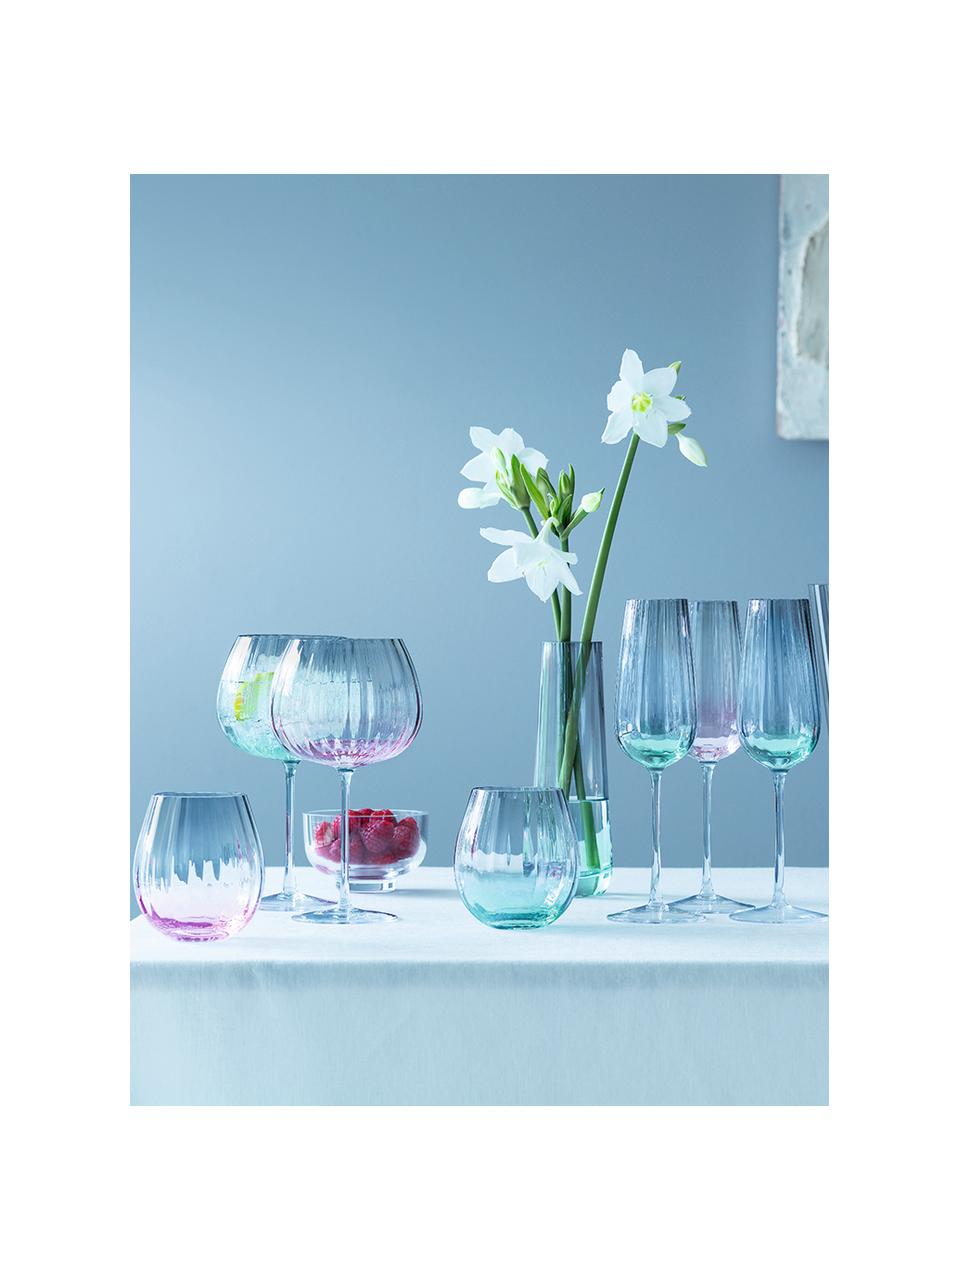 Ručně vyrobené sklenice s barevným přechodem Dusk, 2 ks, Sklo, Zelená, šedá, Ø 9 cm, V 10 cm, 425 ml